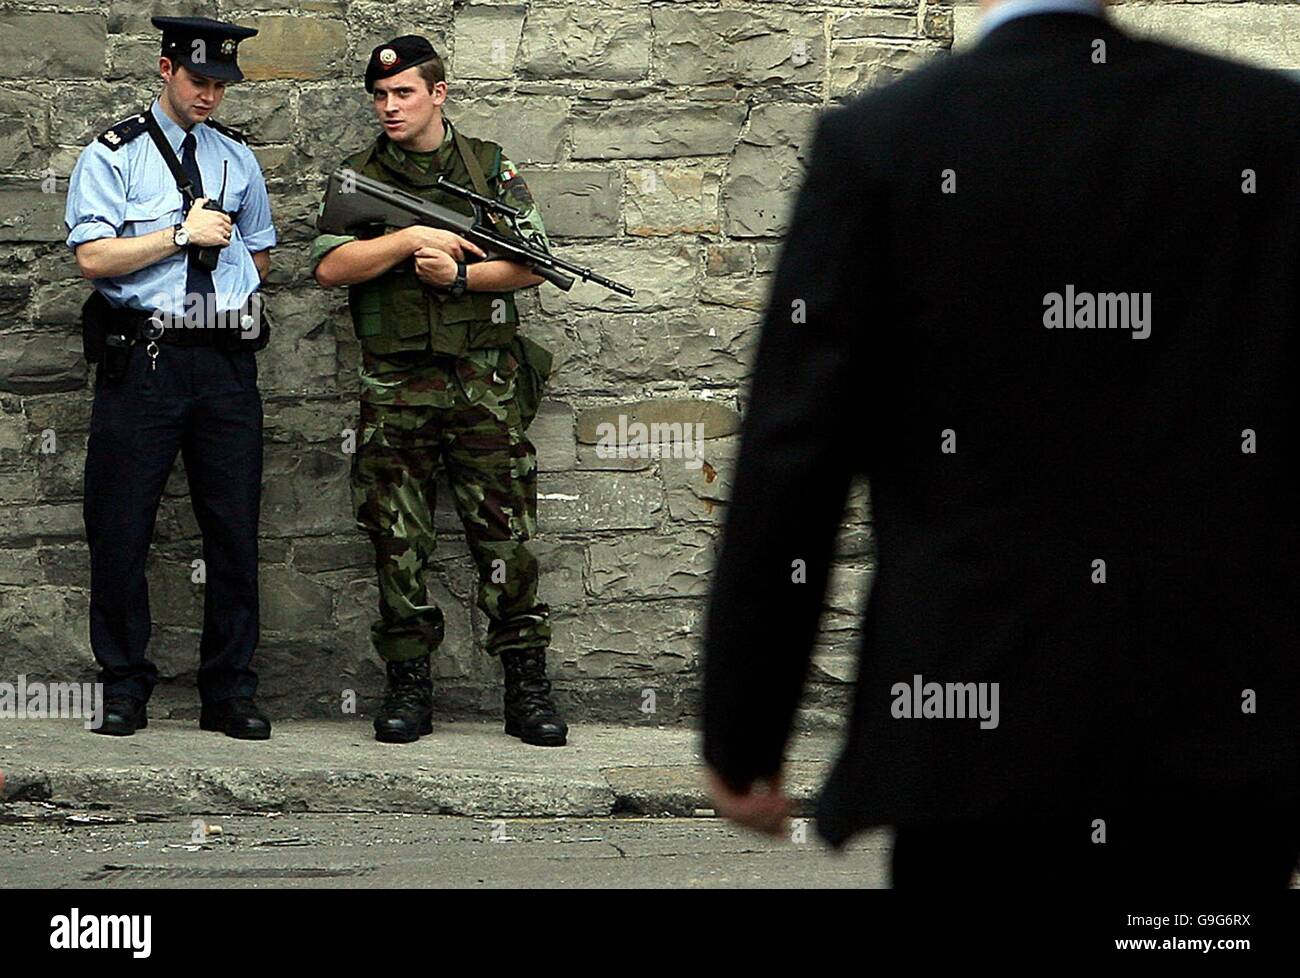 Garda y un soldado cerca de Mansion House en el centro de la ciudad de Dublín, donde un sospechoso dispositivo causó un temor a la seguridad. Foto de stock